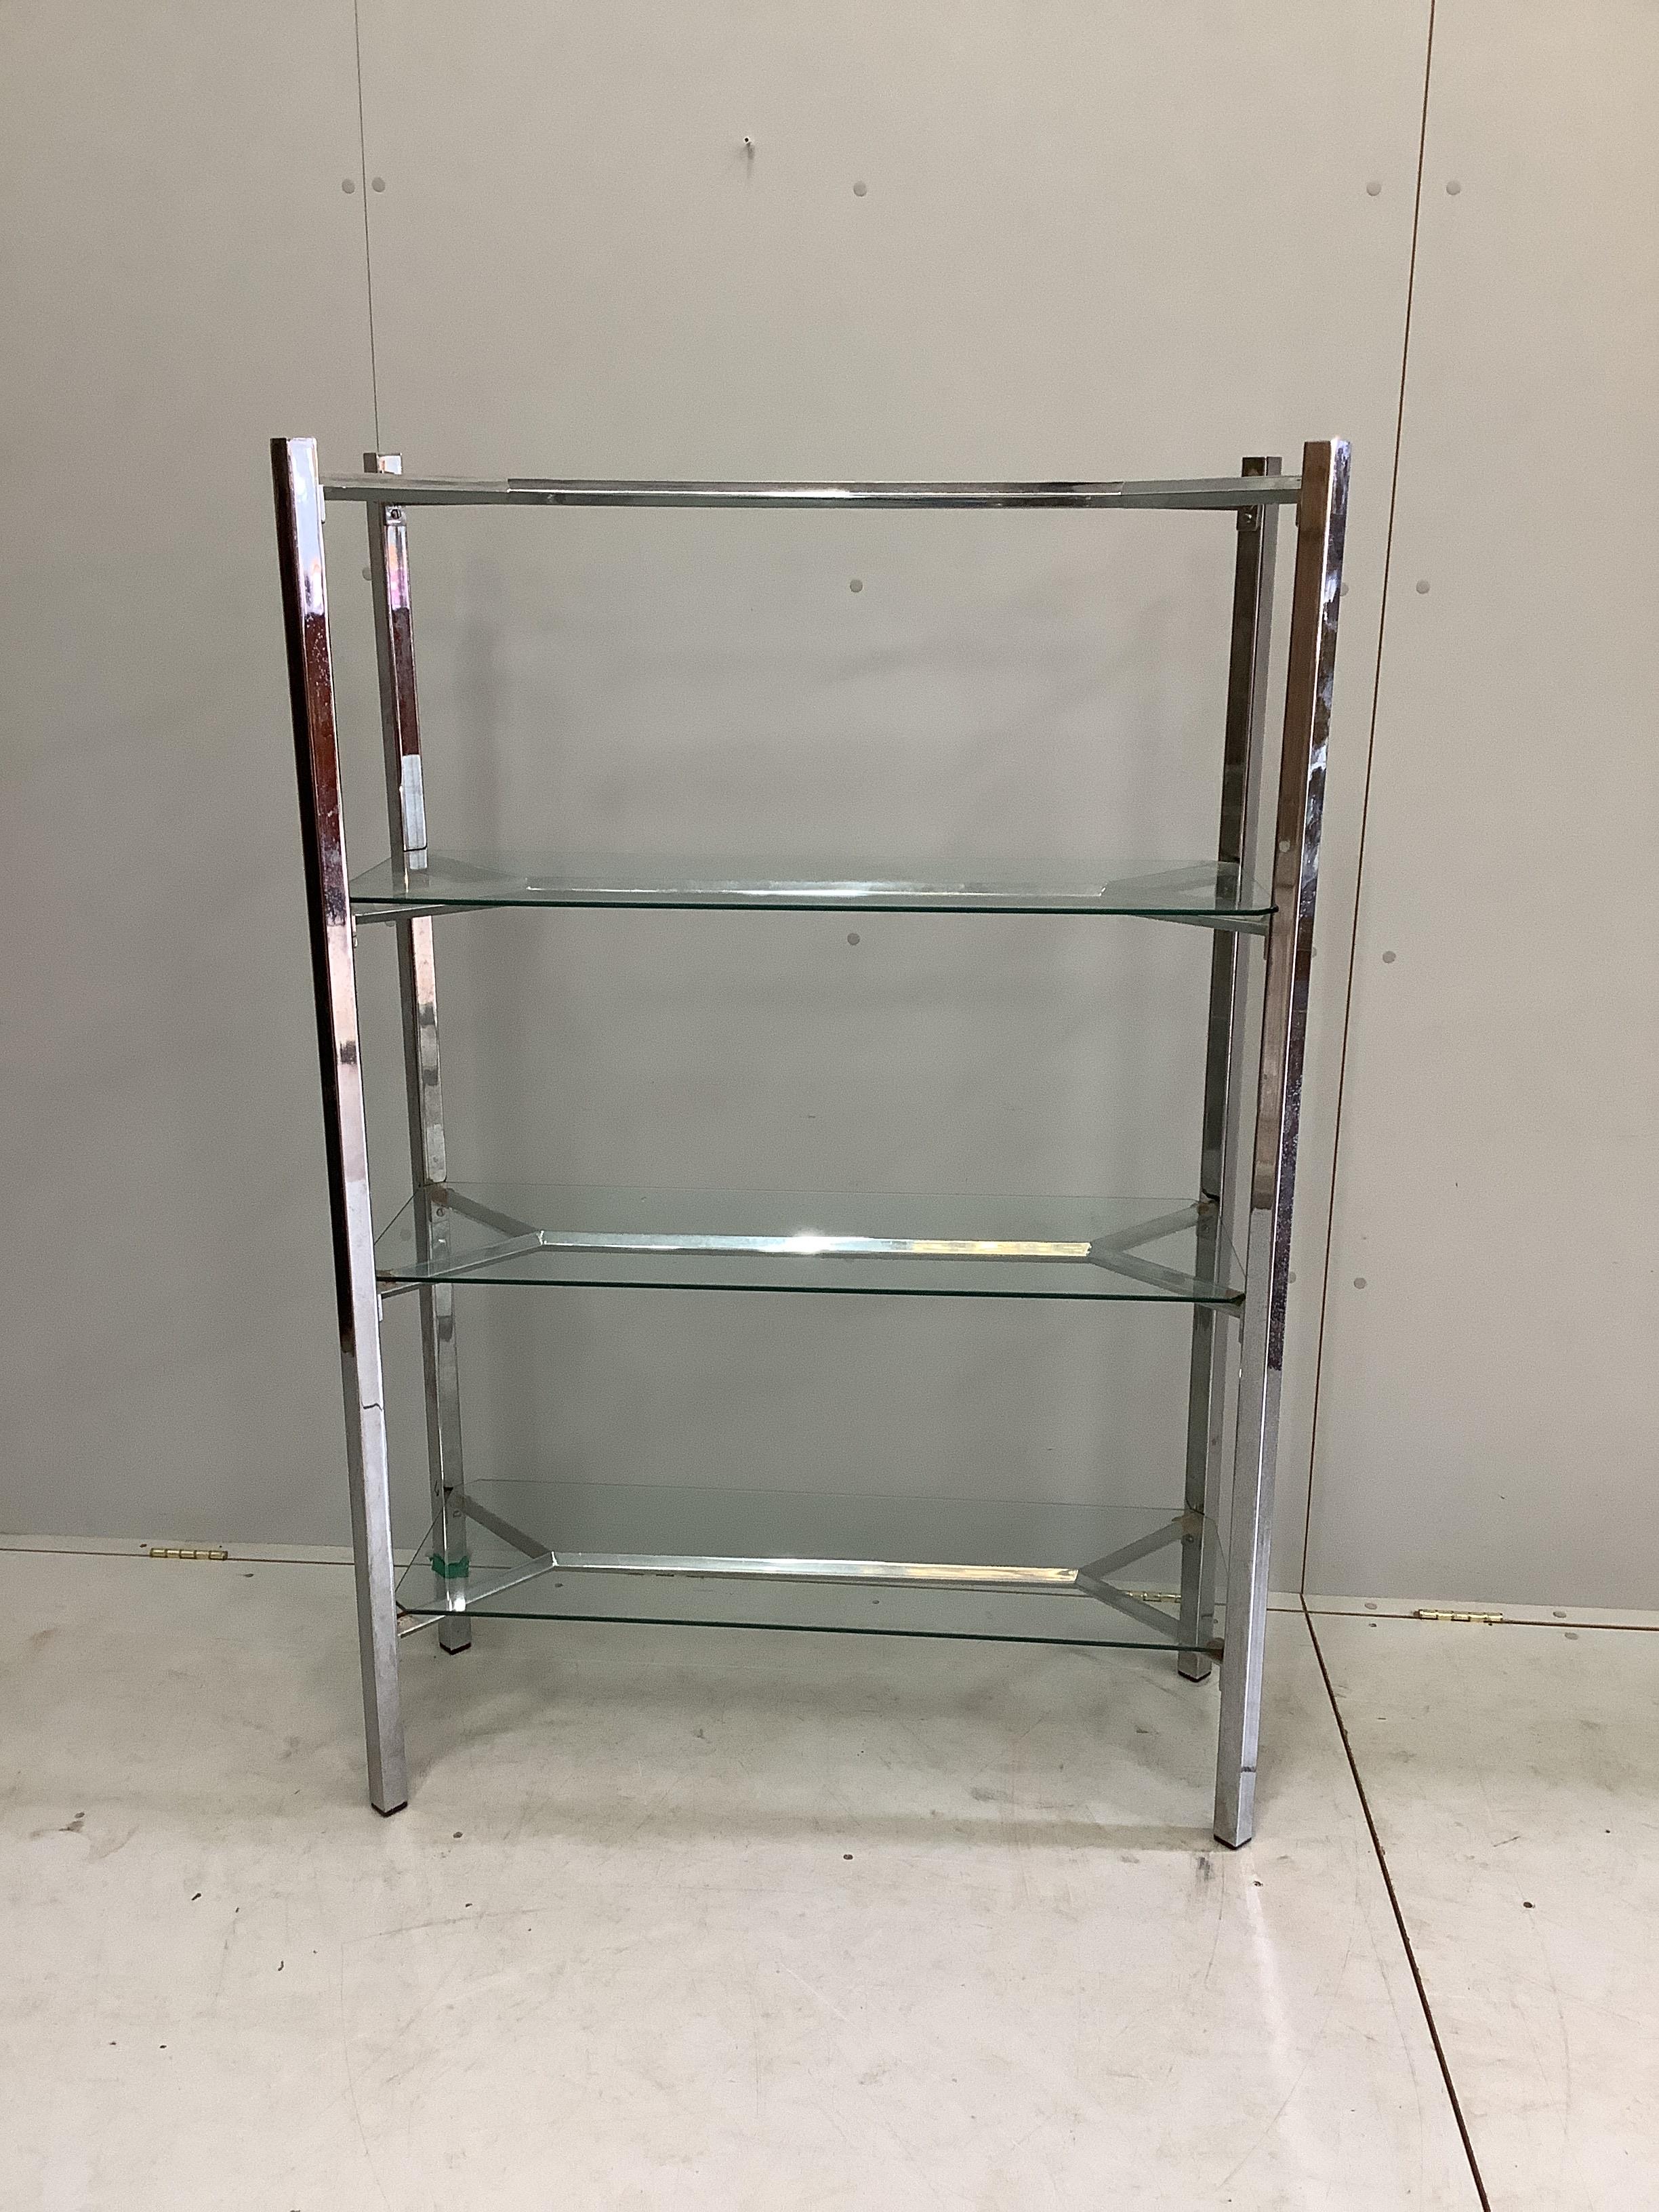 A contemporary chrome and glass three tier shelf unit, width 99cm, depth 38cm, height 147cm